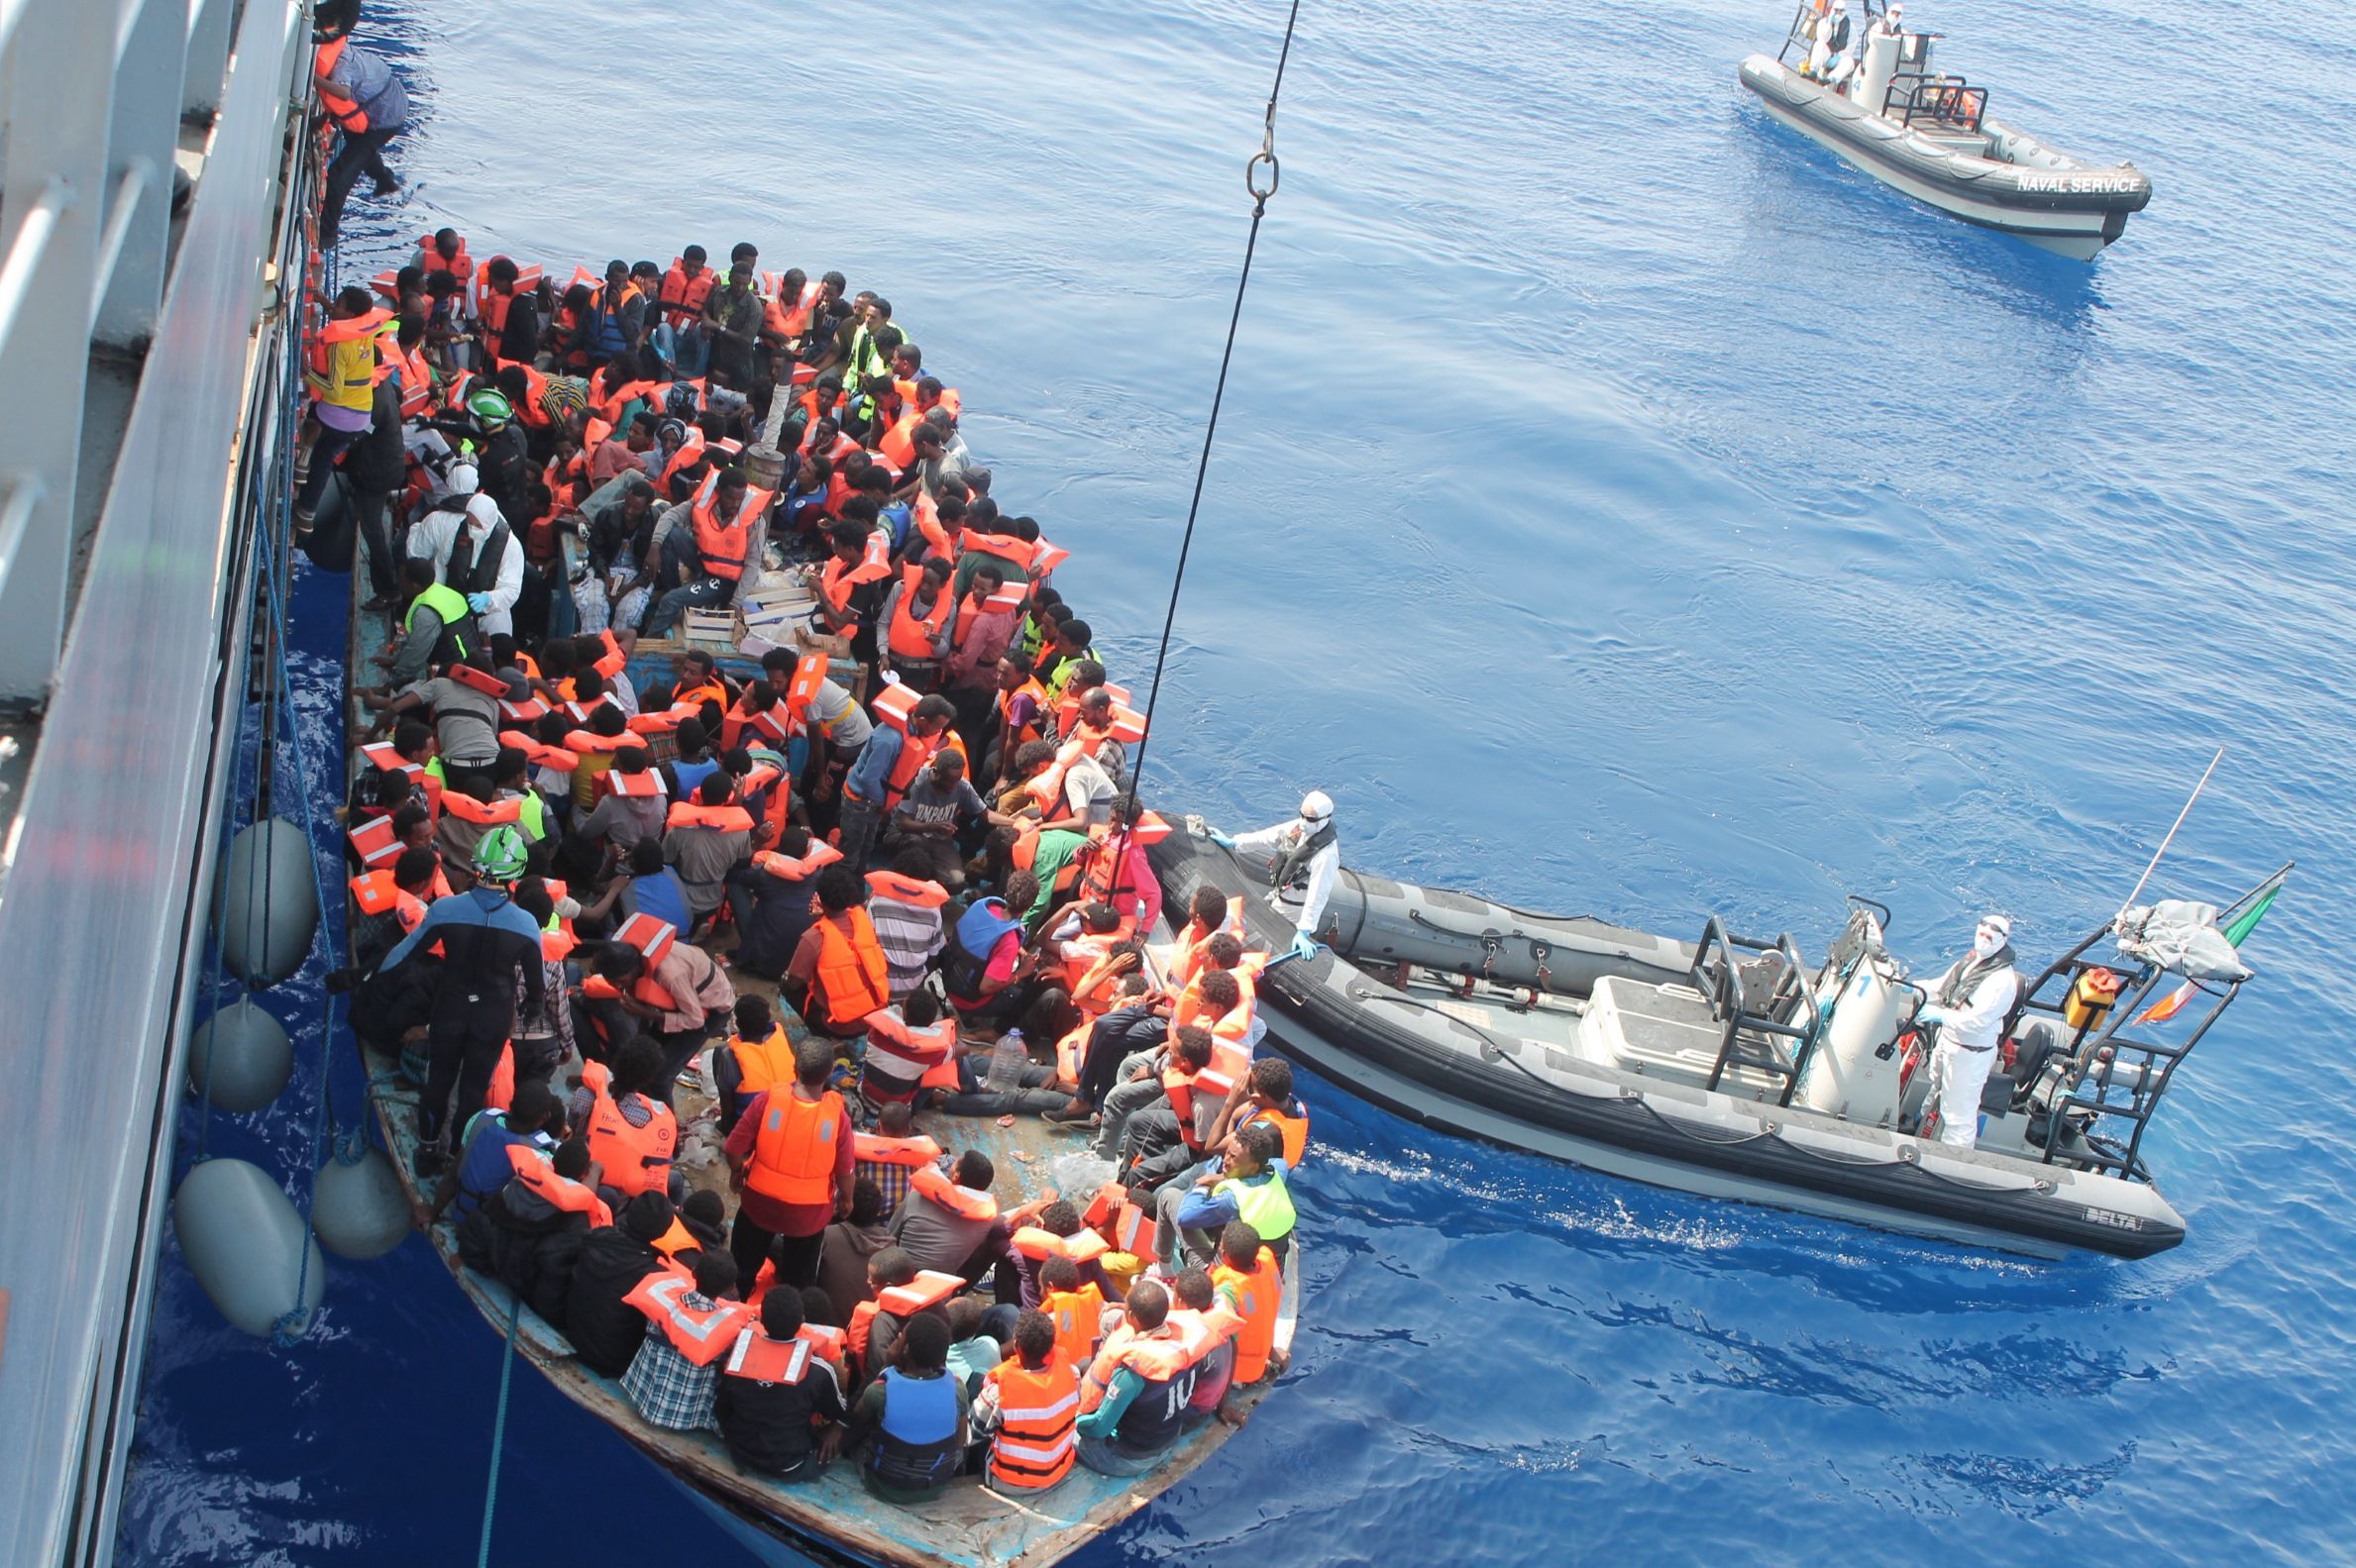 De la casualidad, milagro: aparece la madre de una niña que había llegado sola a Lampedusa